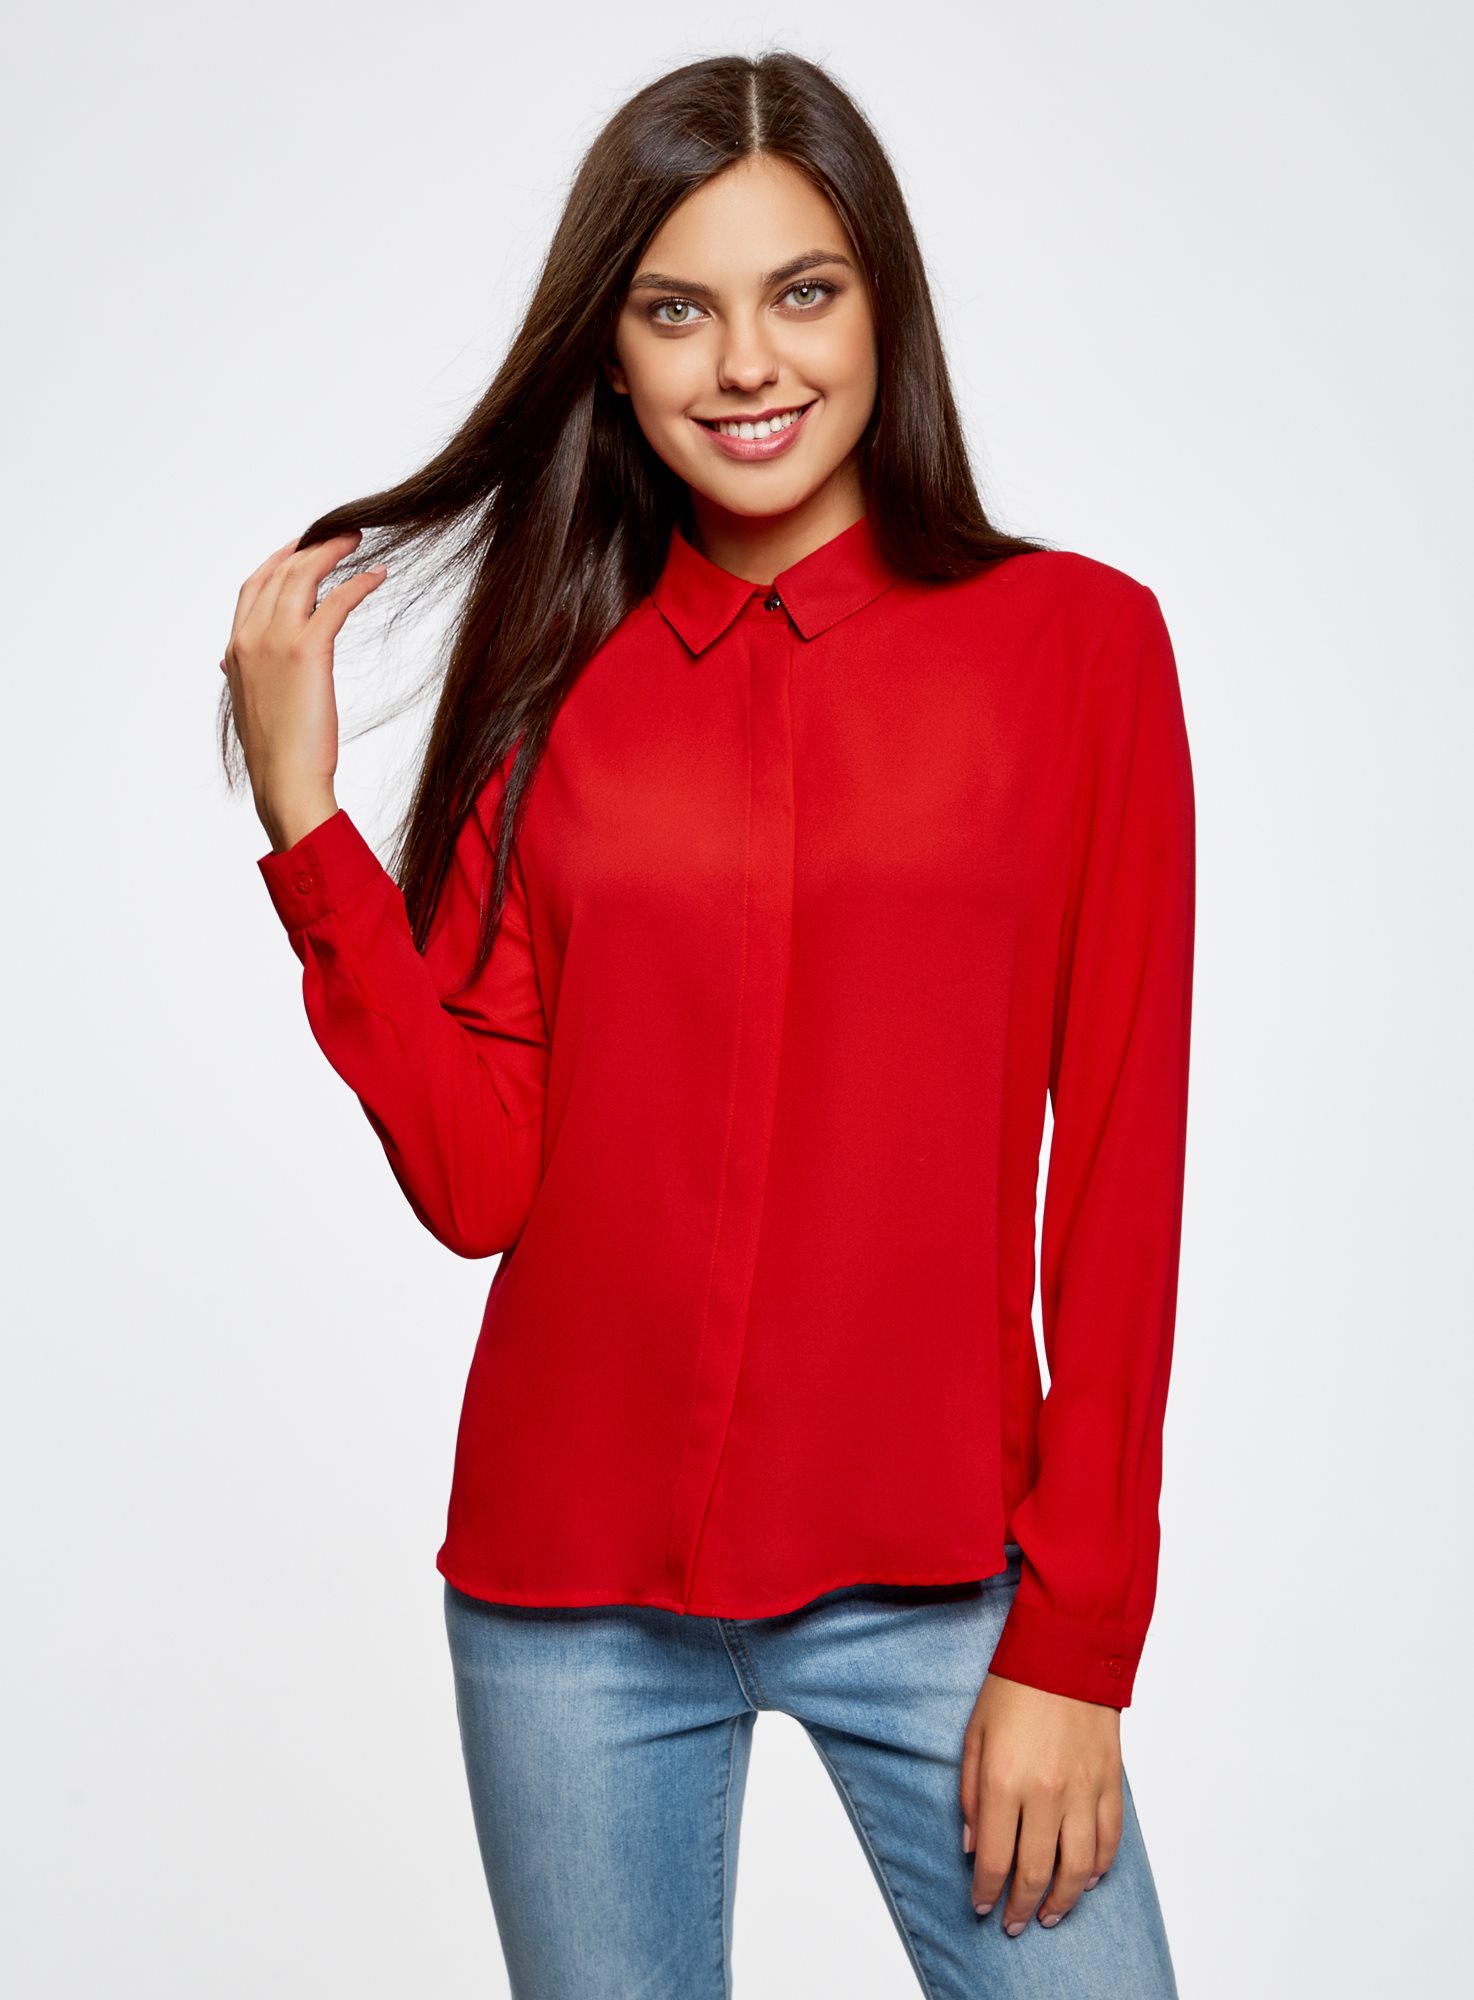 Красные блузки женская. Oodji блузка красная. Красная блуза. Красная кофта. Красная кофта женская.